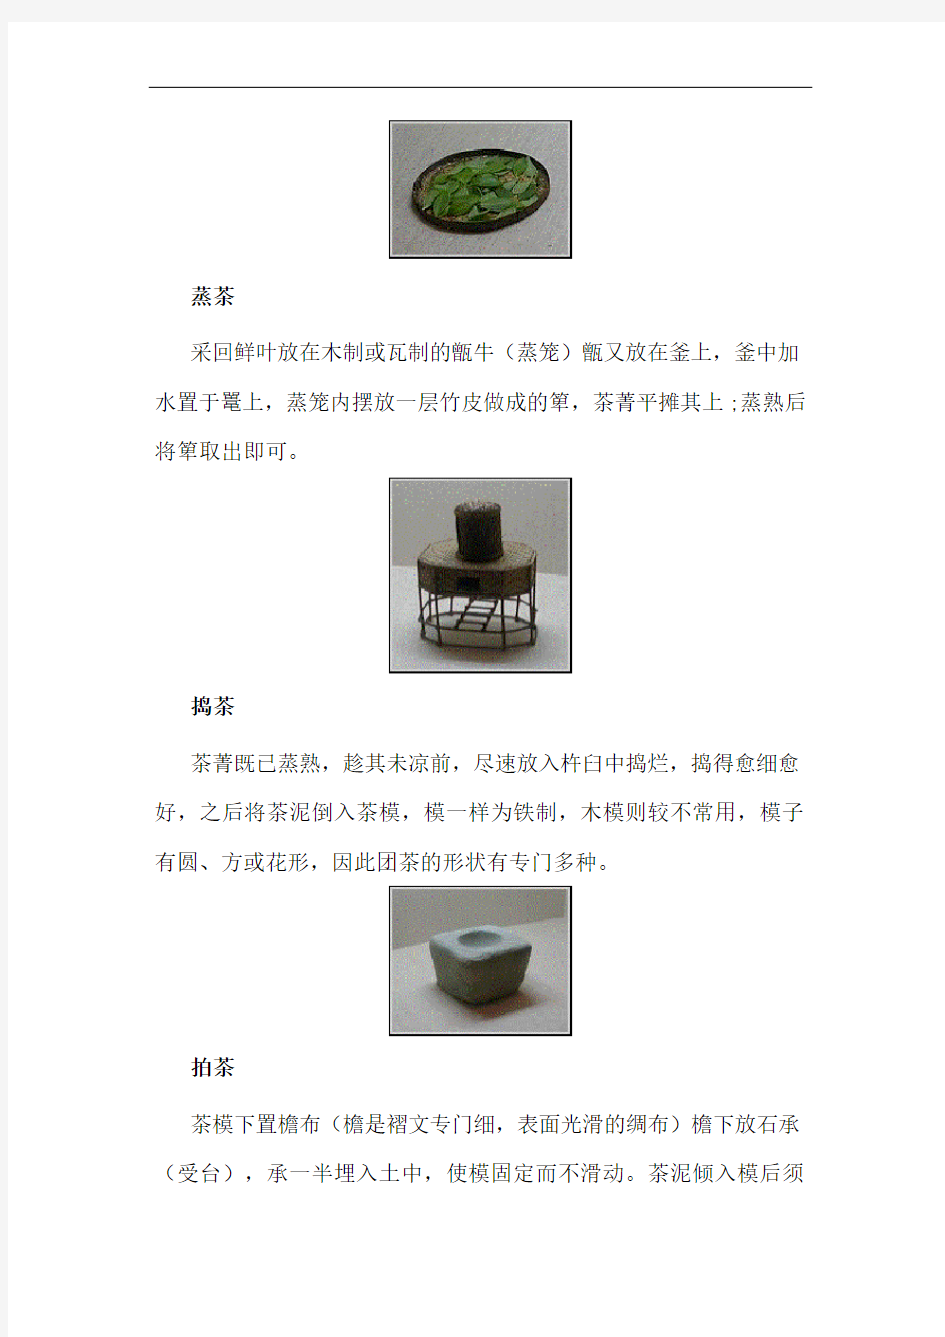 中国唐宋时期制茶方法与现代制茶工艺